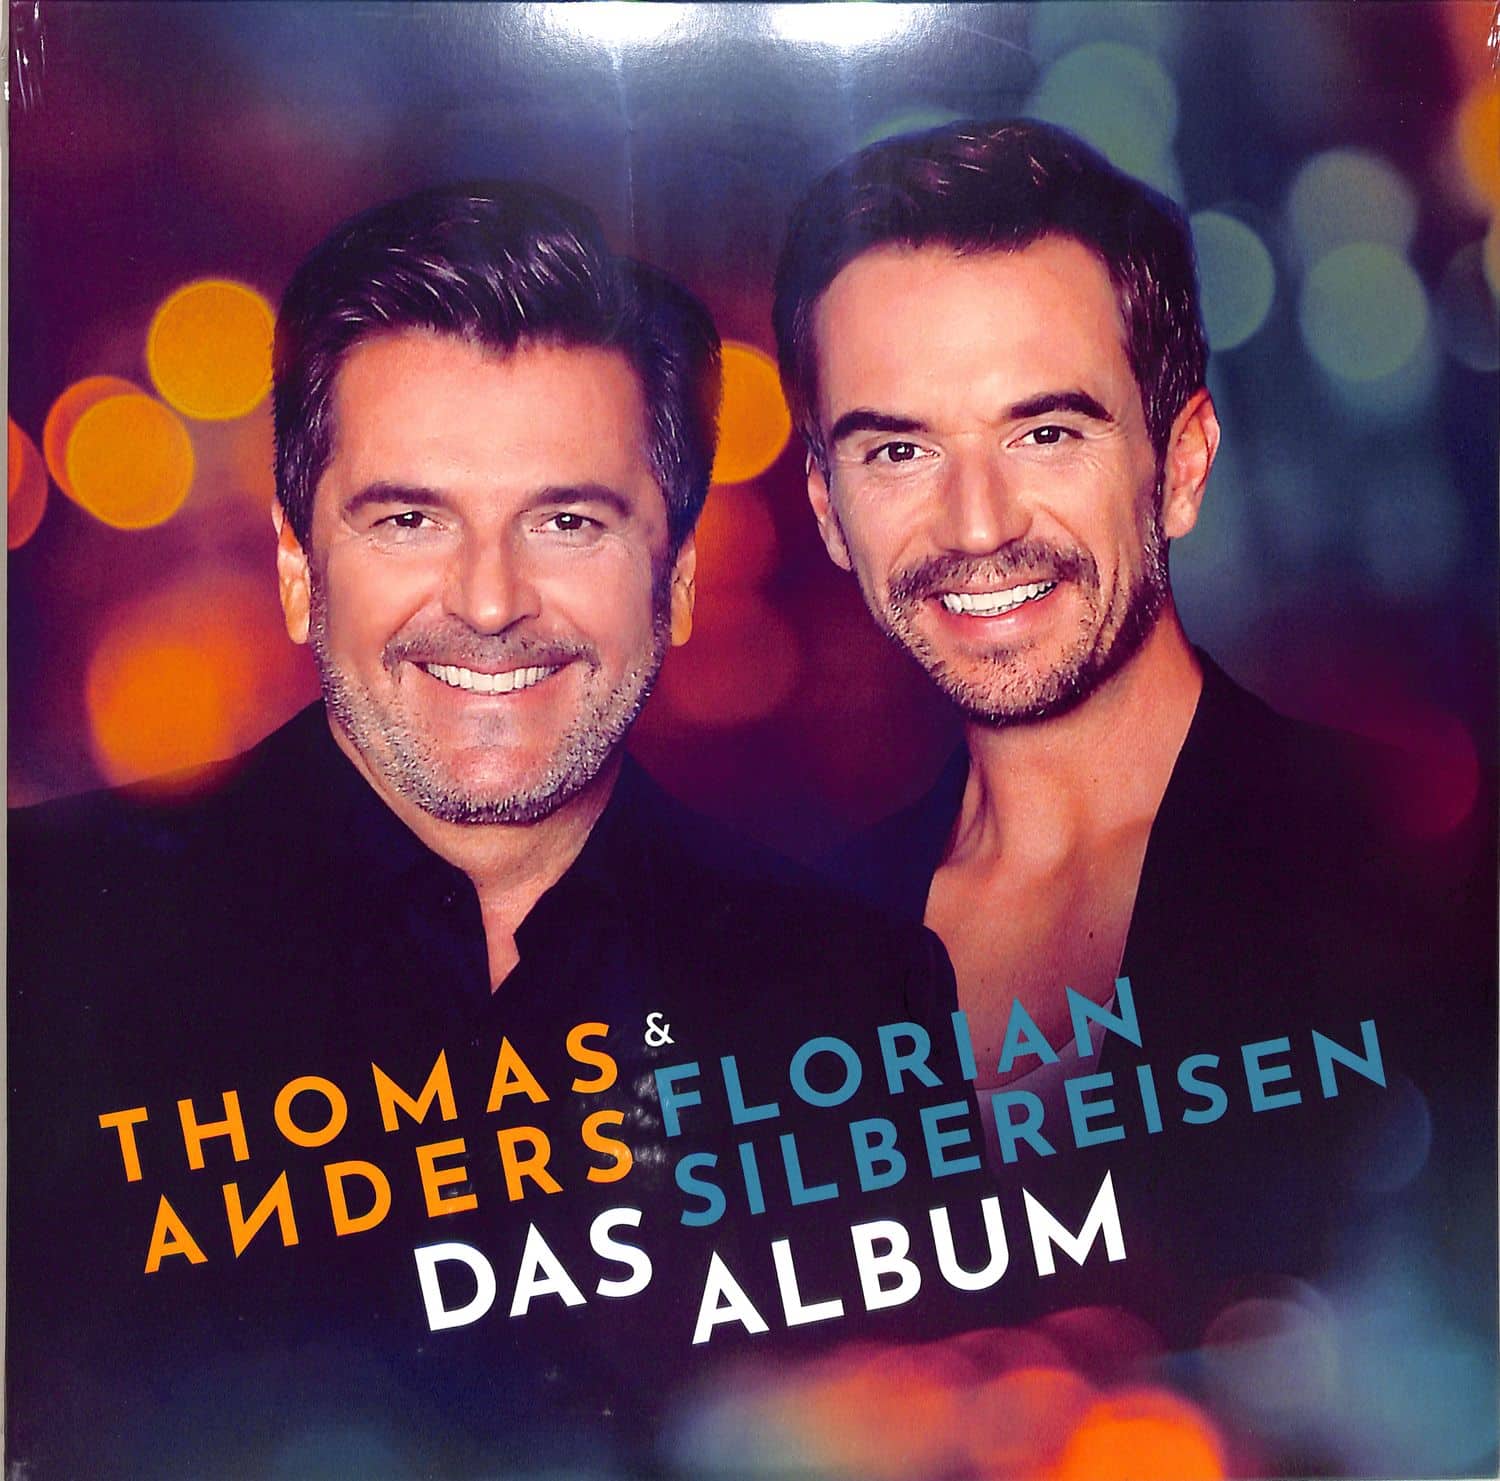 Thomas Anders & Florian Silbereisen - DAS ALBUM 